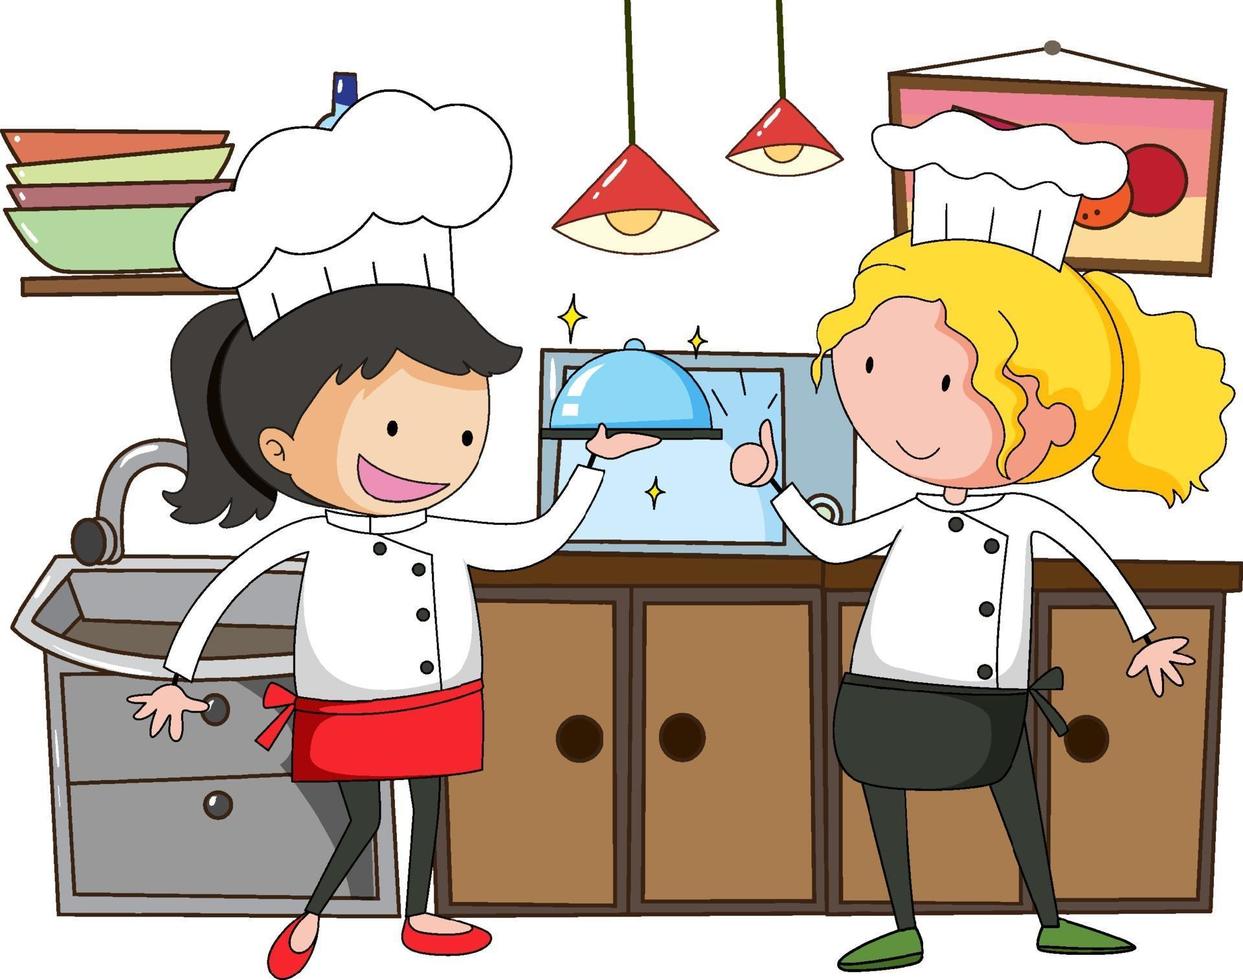 pequeno chef com equipamentos de cozinha em fundo branco vetor